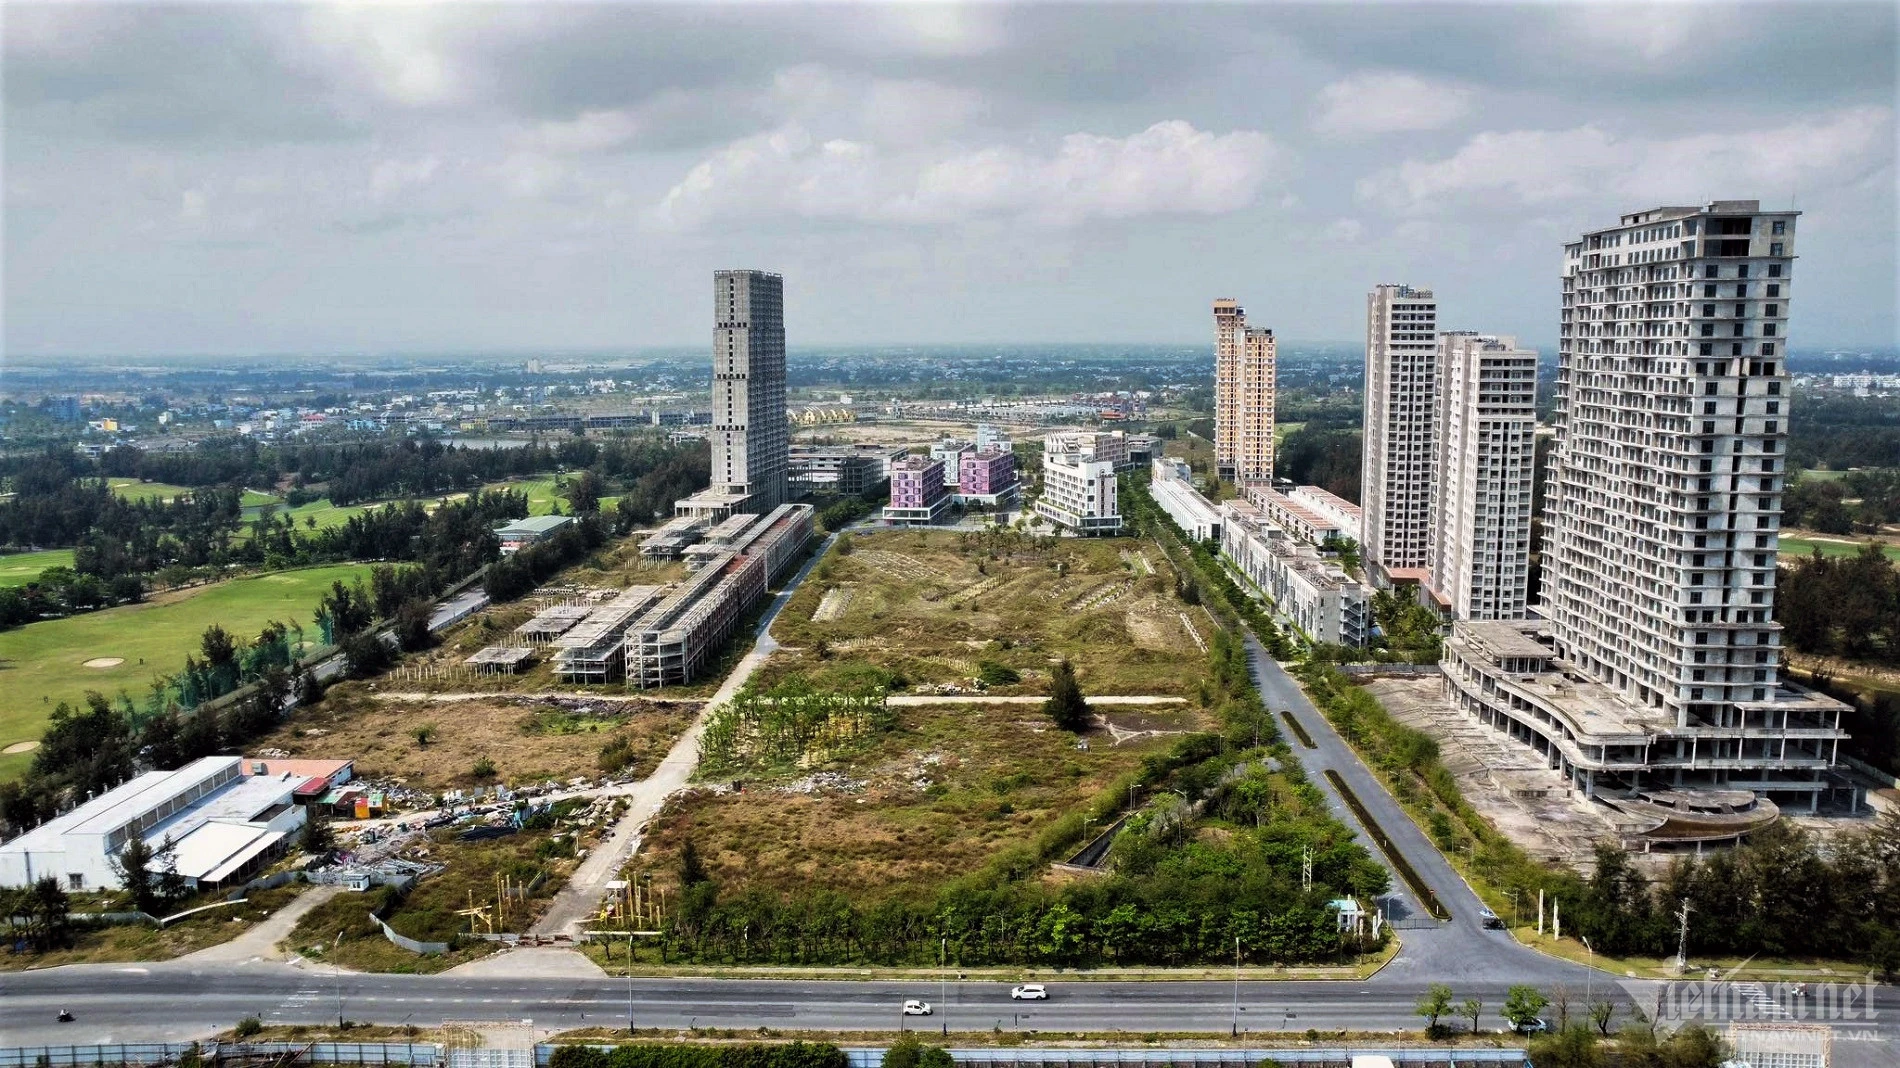 Chính quyền Đà Nẵng đã cho phép chủ đầu tư chuyển đổi một phần căn hộ condotel thành chung cư, tương ứng khoảng khoảng 1.500 căn. Ảnh: Hồ Giáp